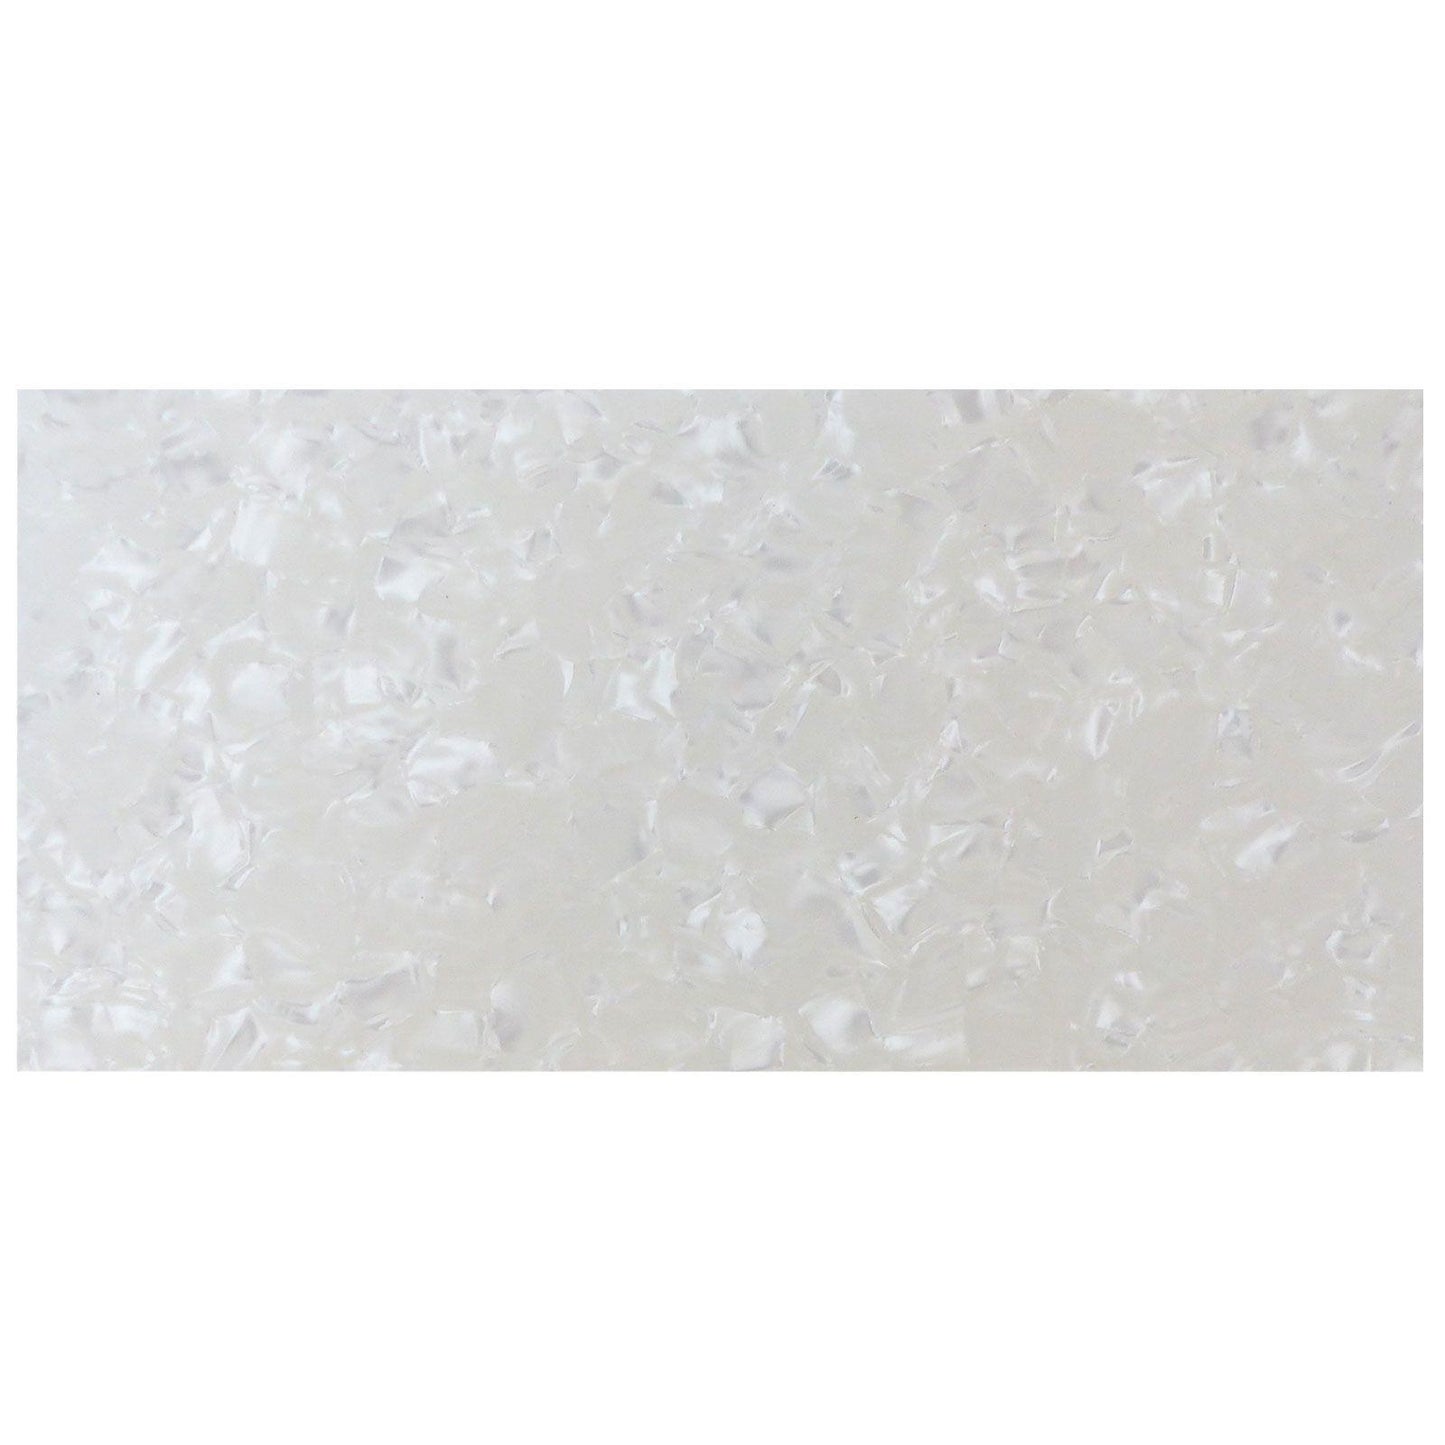 Incudo White Pearloid Celluloid Sheet - 200x100x0.75mm (7.9x3.94x0.03")